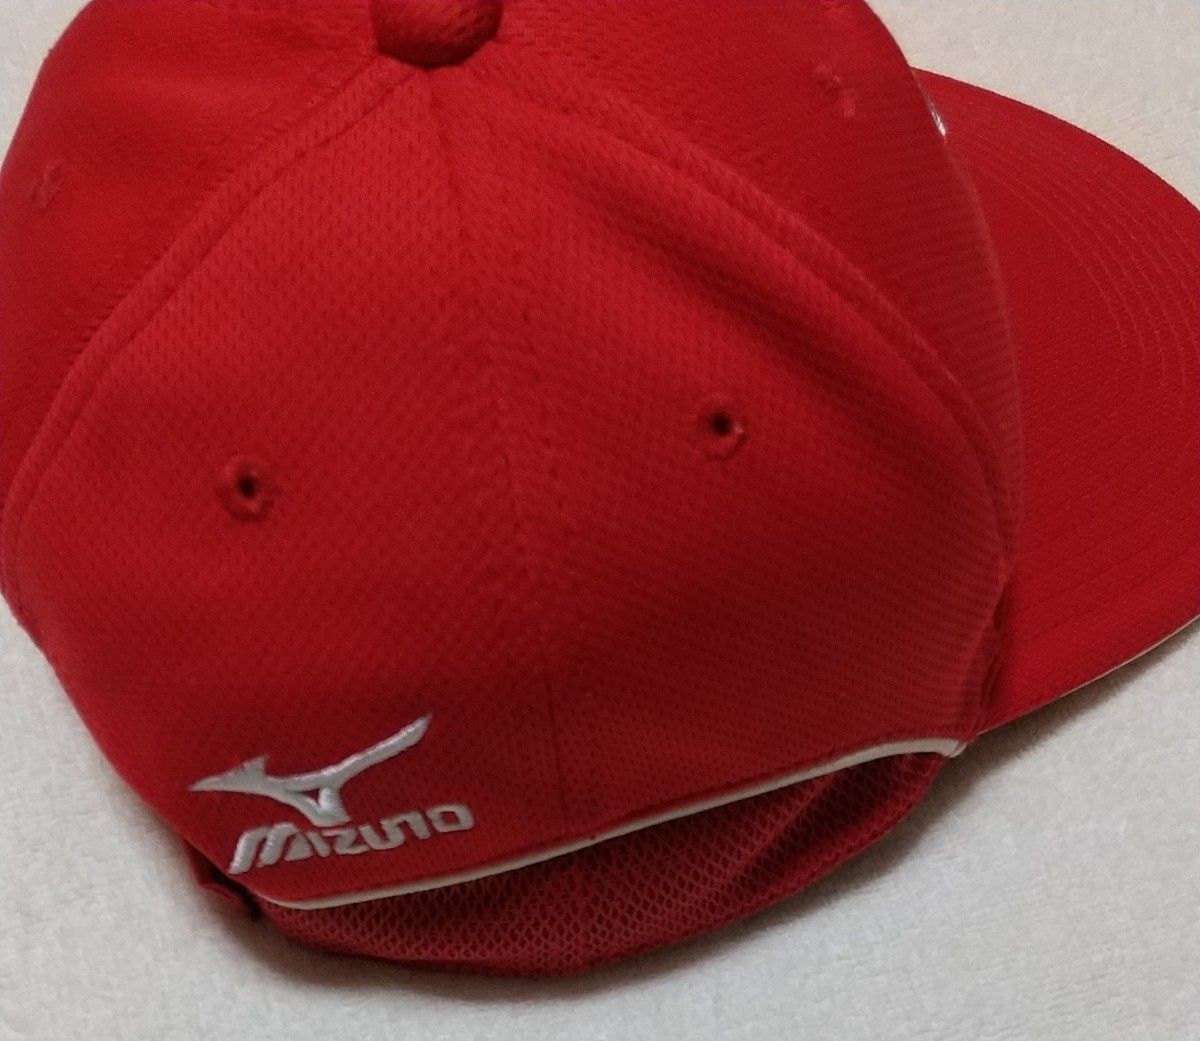 S サイズ ポルテ 帽子   野球帽 キャップ ベースボール 野球 mizuno ミズノ タブ 記名あり 塗りつぶしきれい